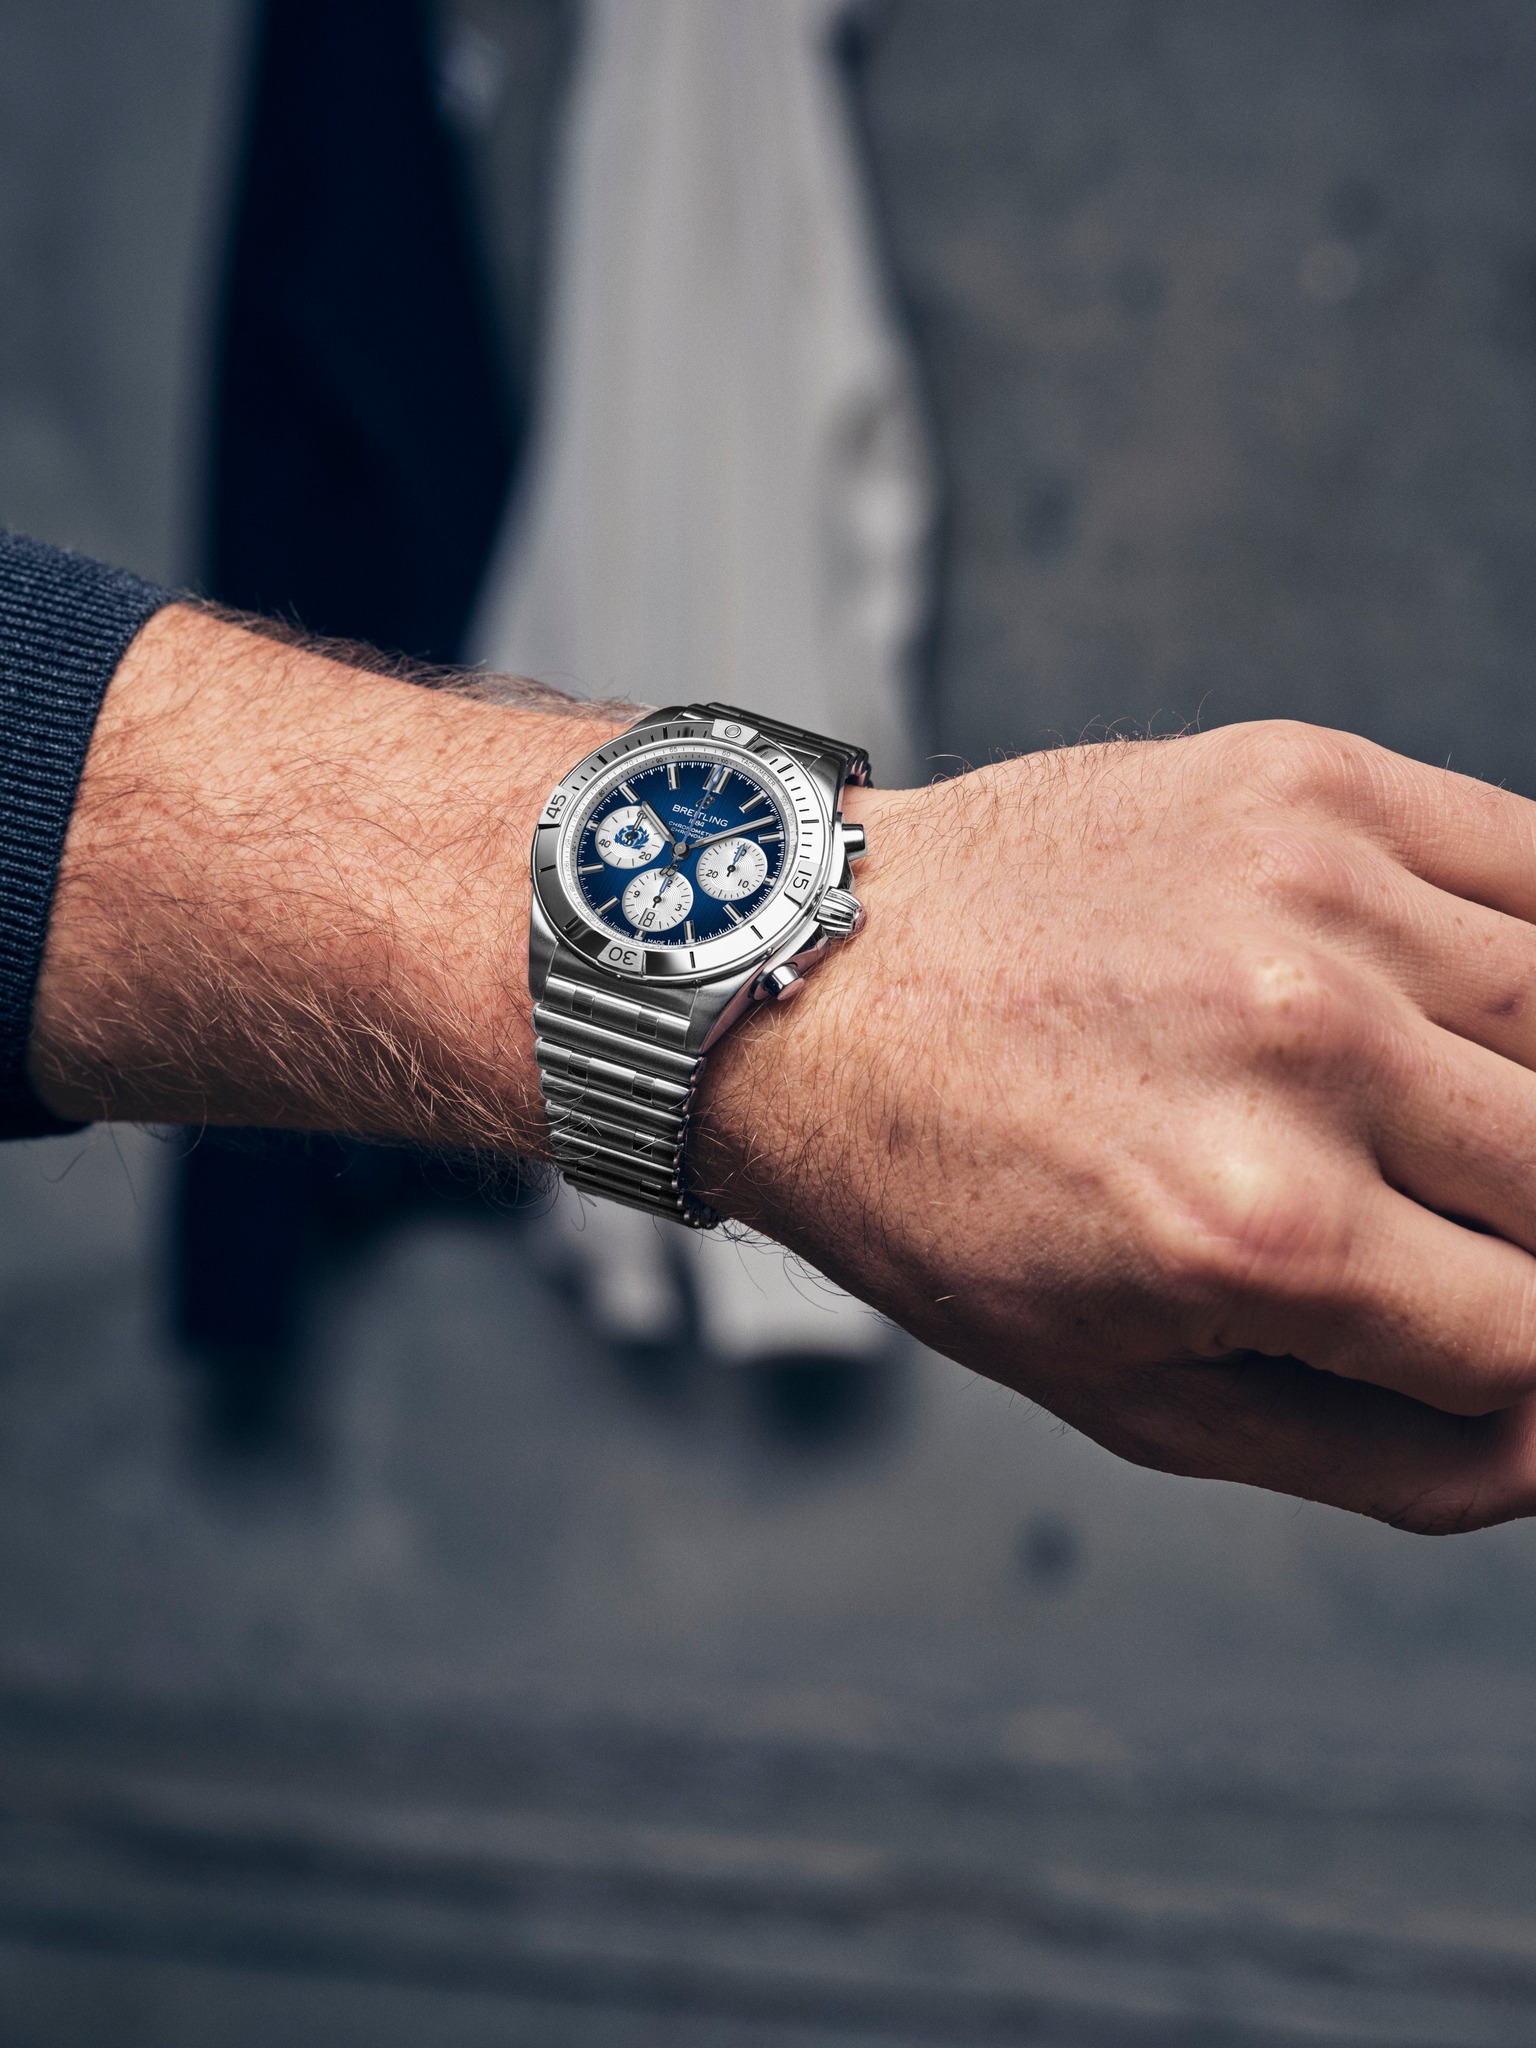 Las 5 reglas básicas para combinar tu reloj con tu estilo